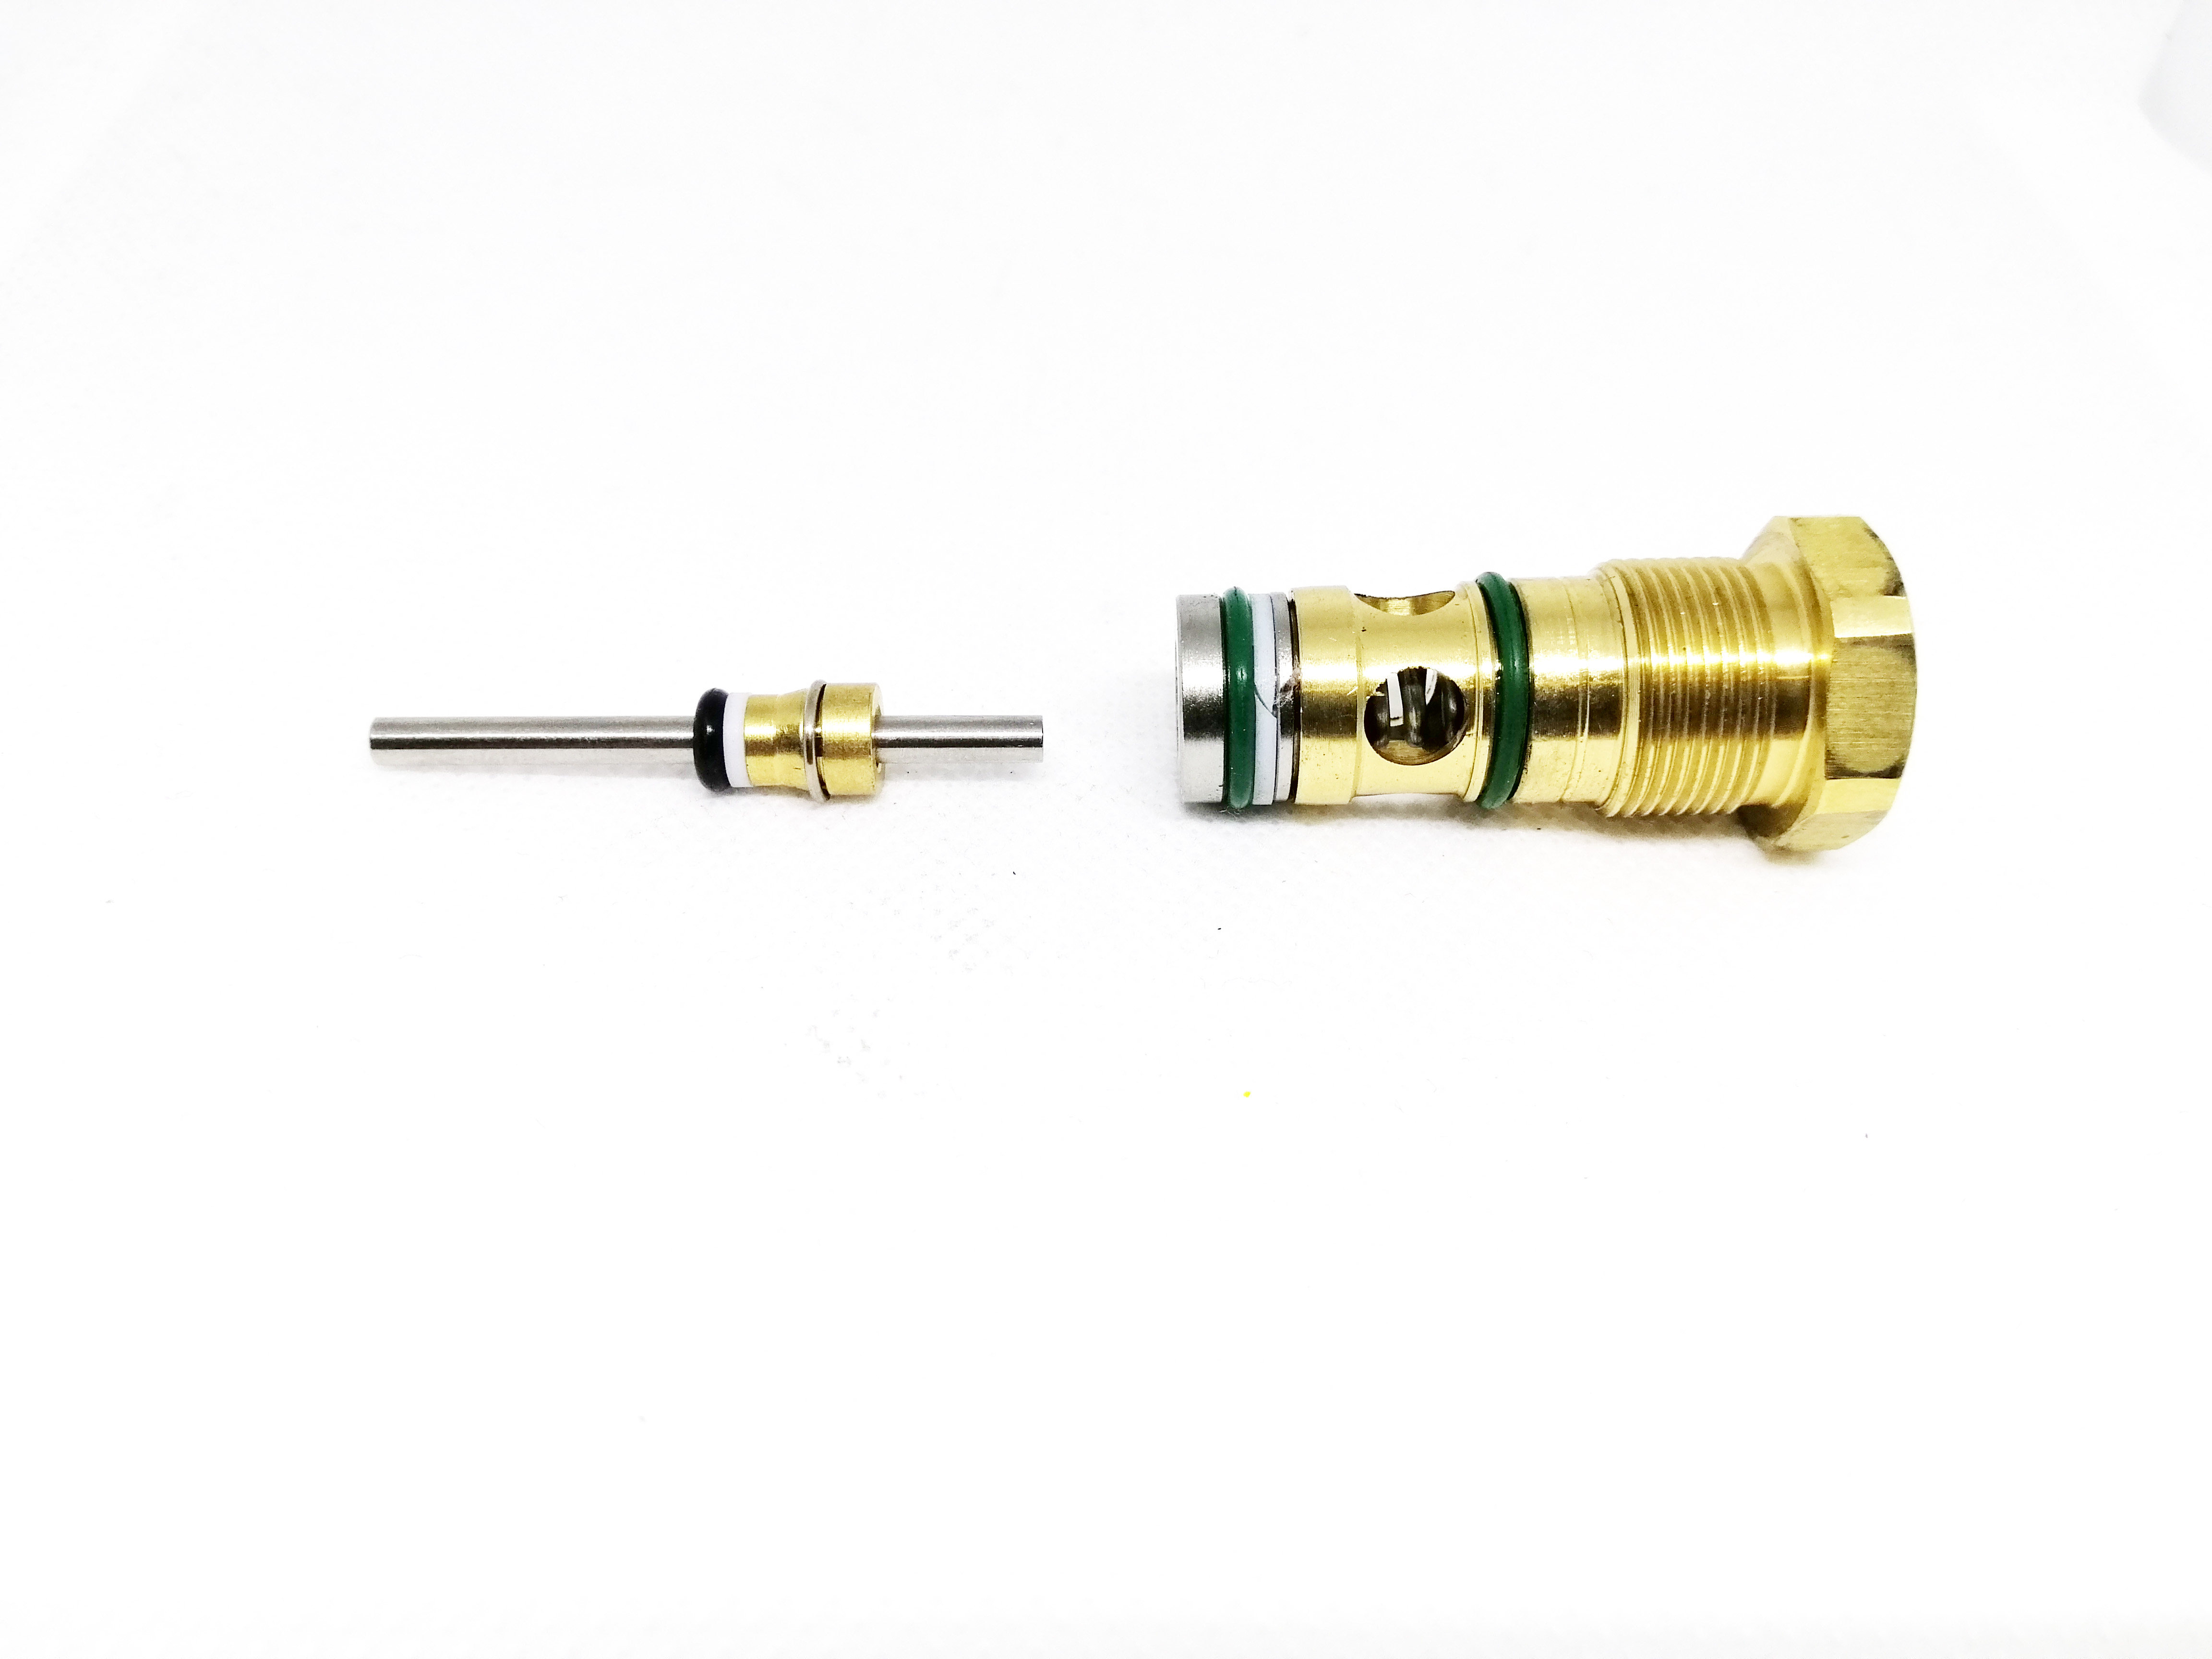 Repair Kit of High Pressure Washer Trigger Gun 5000psi RK-TG5001